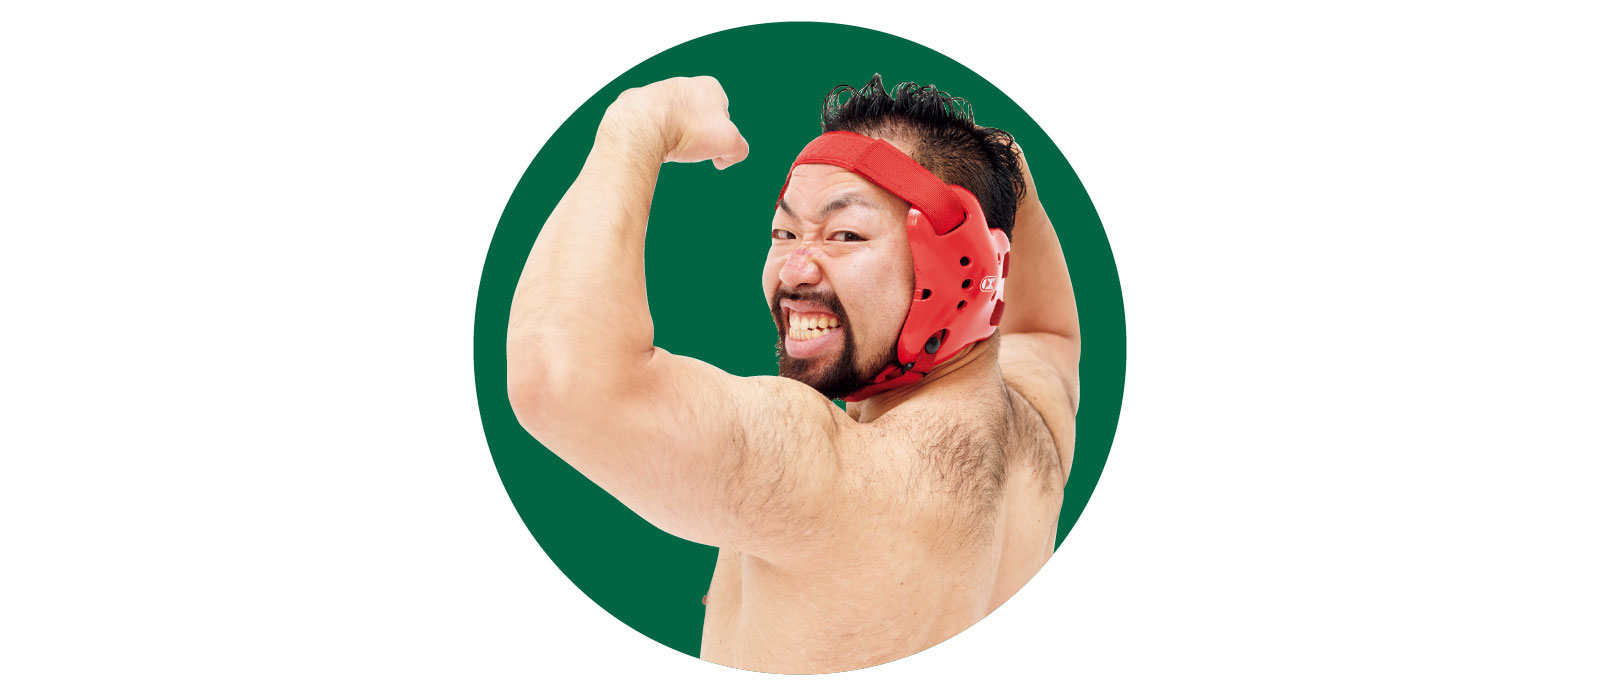 
プロレスラー、トレーナー 八須拳太郎さん